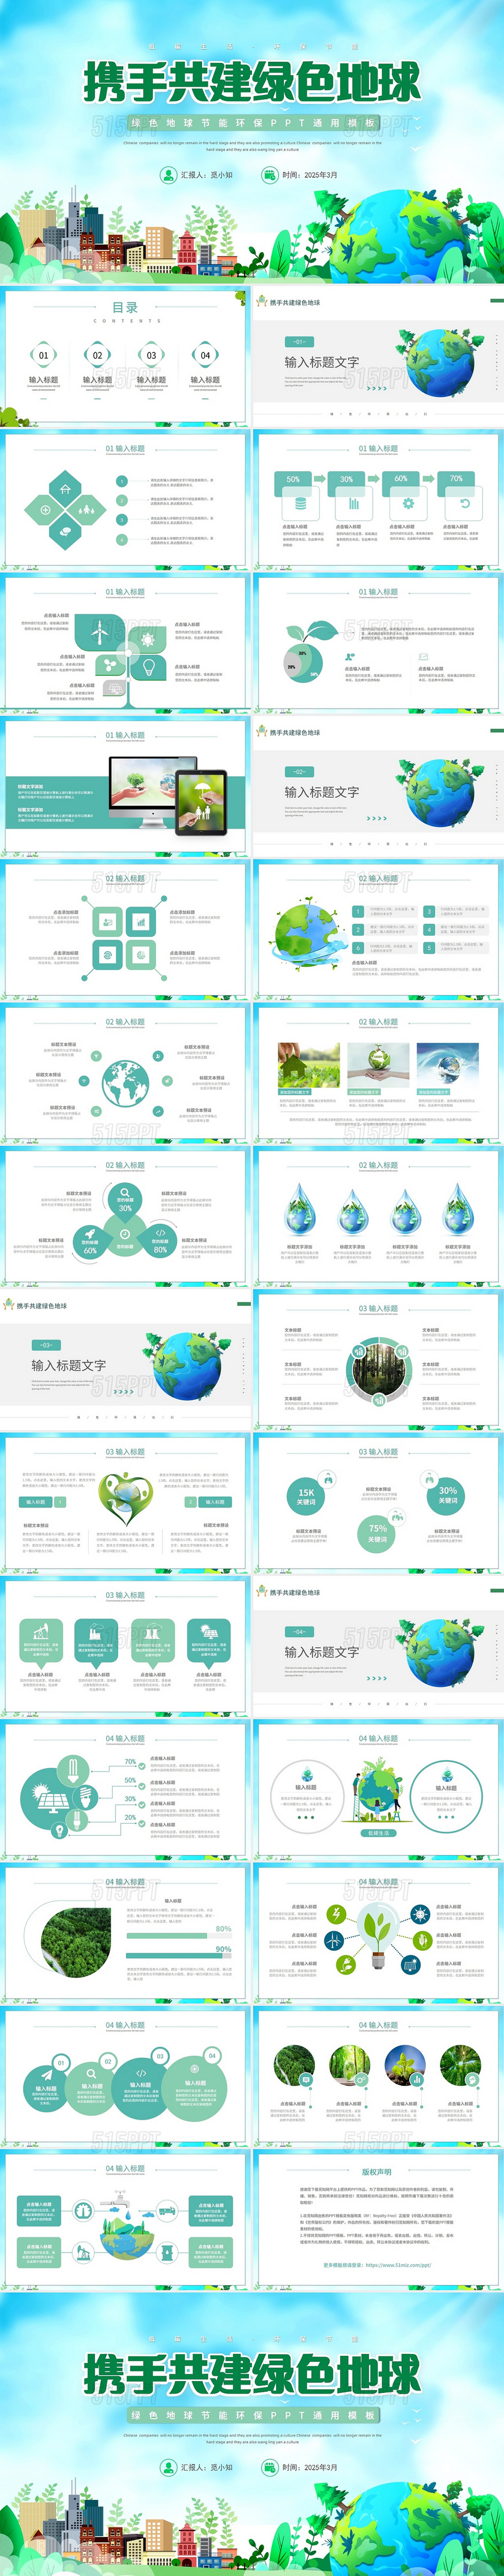 绿色卡通地球主题活动企业介绍环保产品PPT模板绿色地球